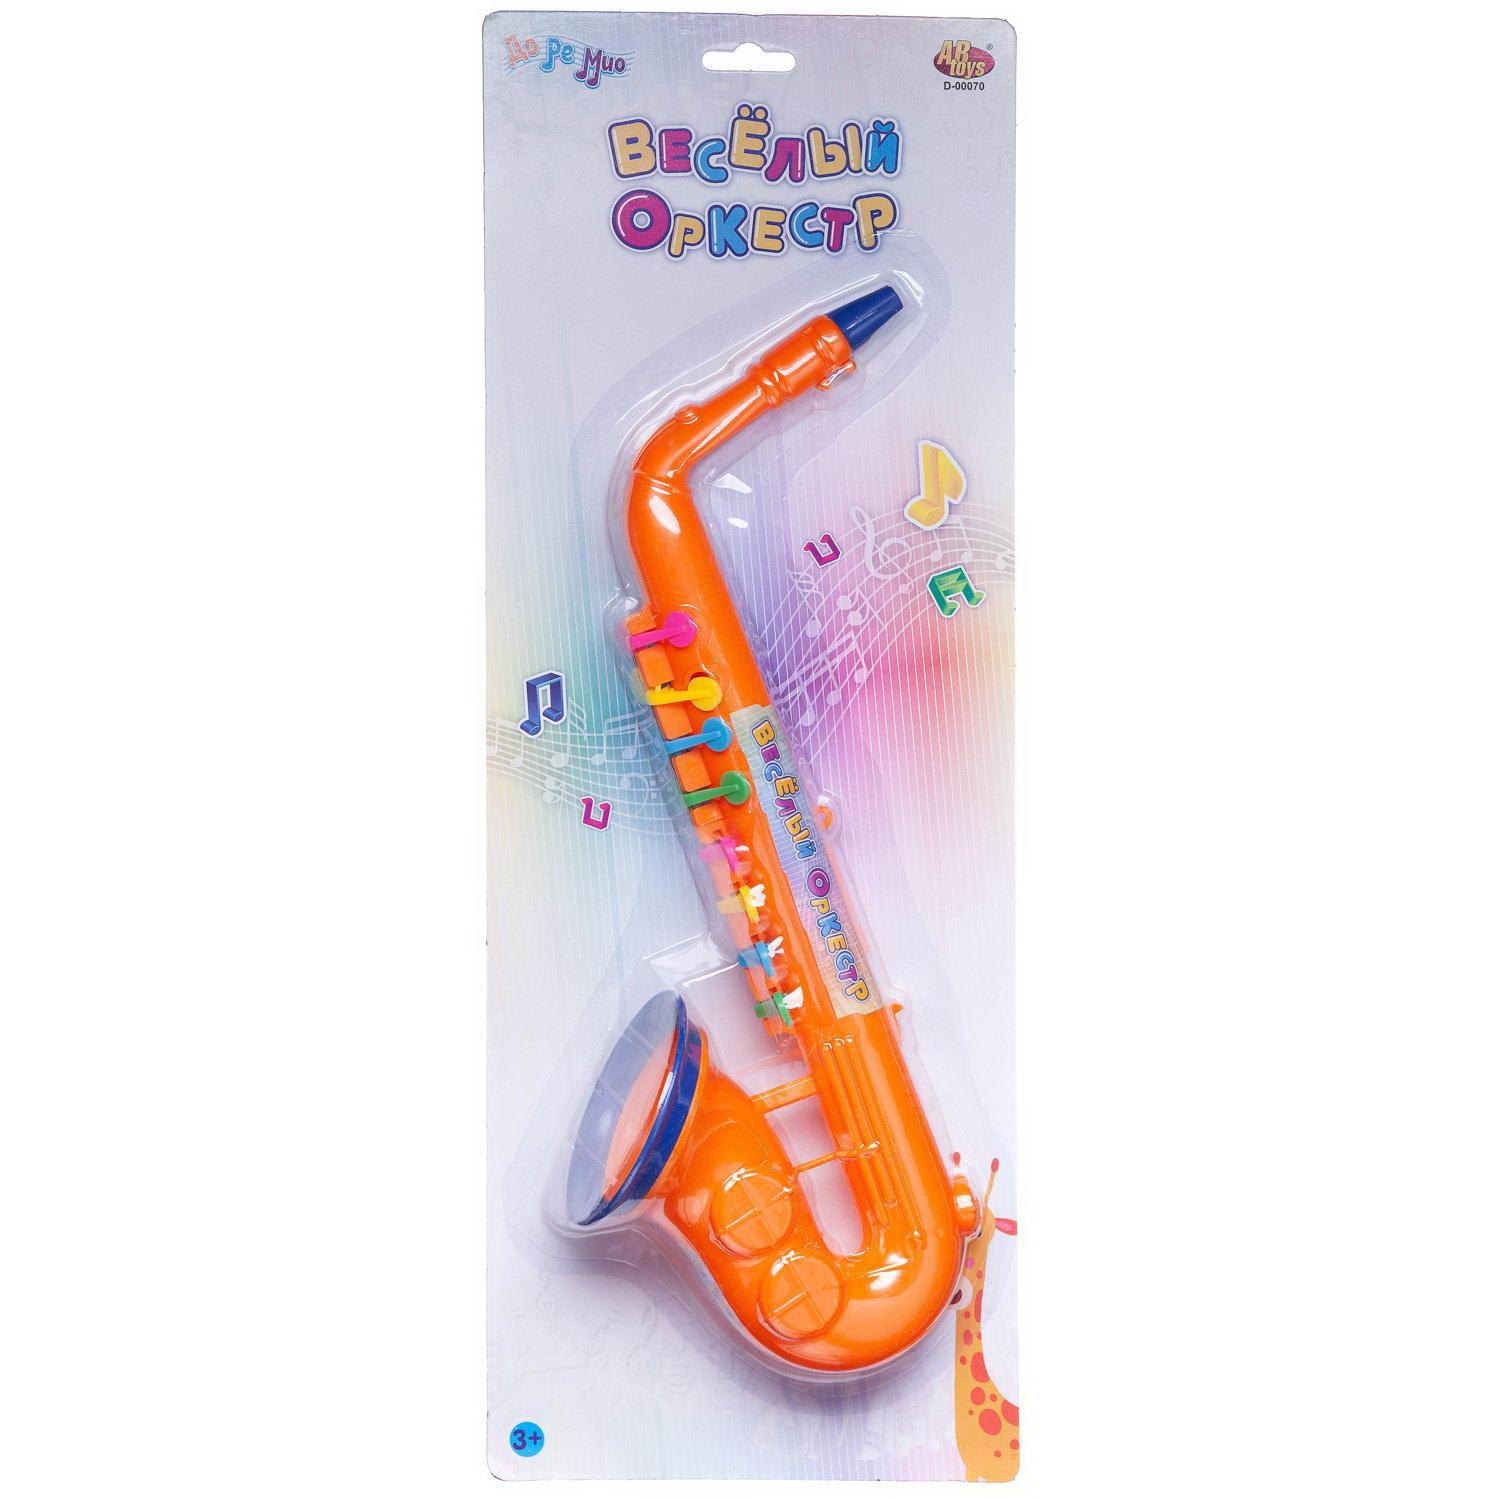 фото Музыкальный инструмент abtoys доремио весёлый оркестр саксофон оранжевый junfa toys ltd.